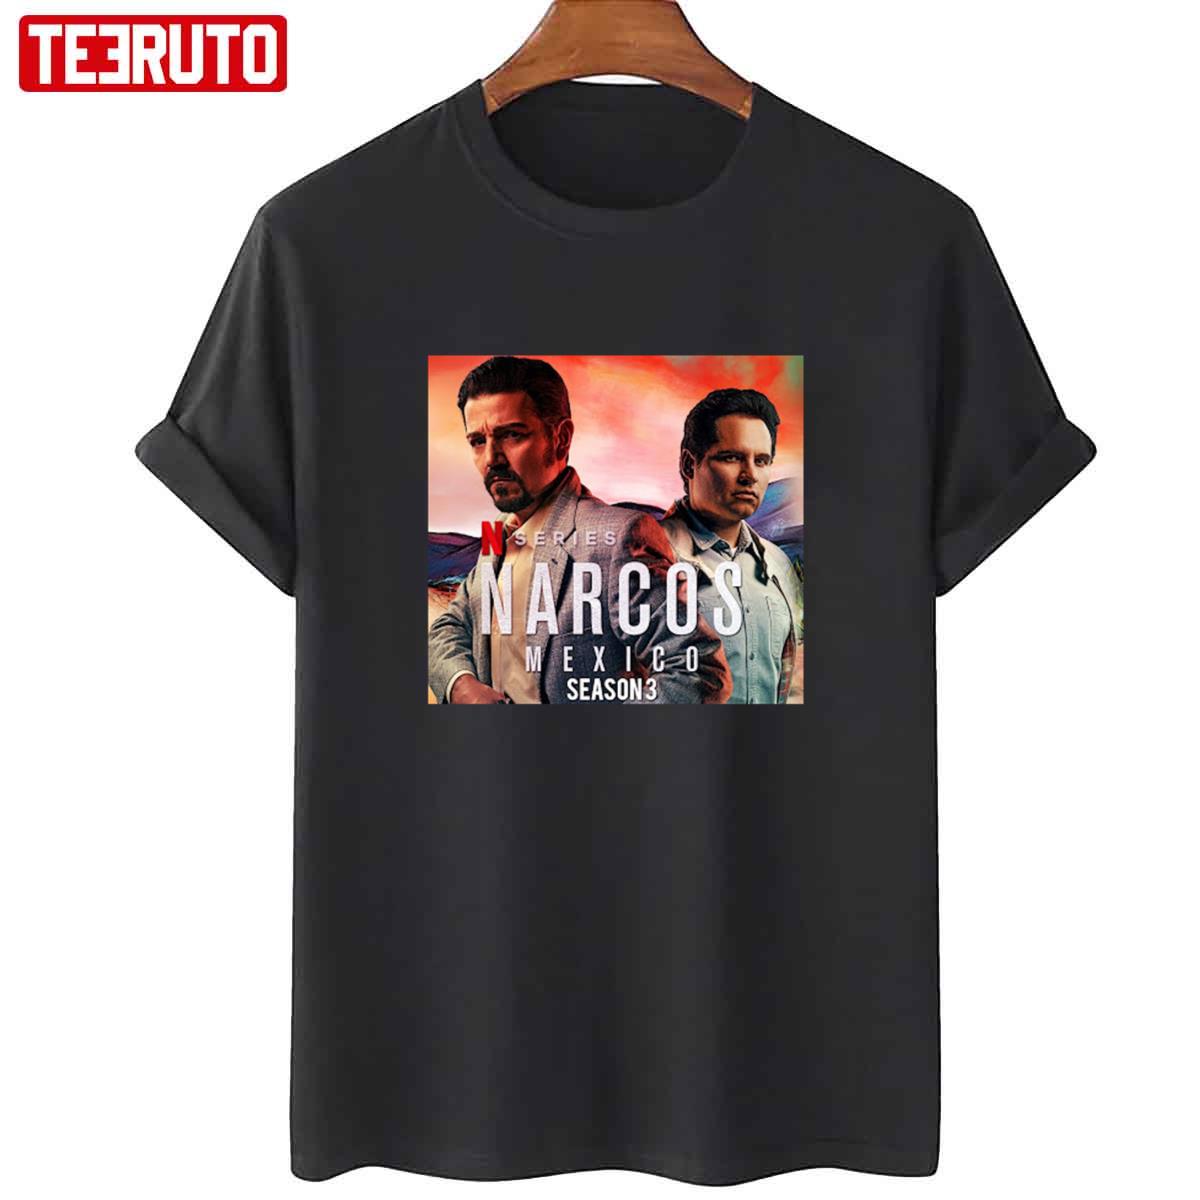 Narcos Mexico Series Season 3 Unisex T-Shirt